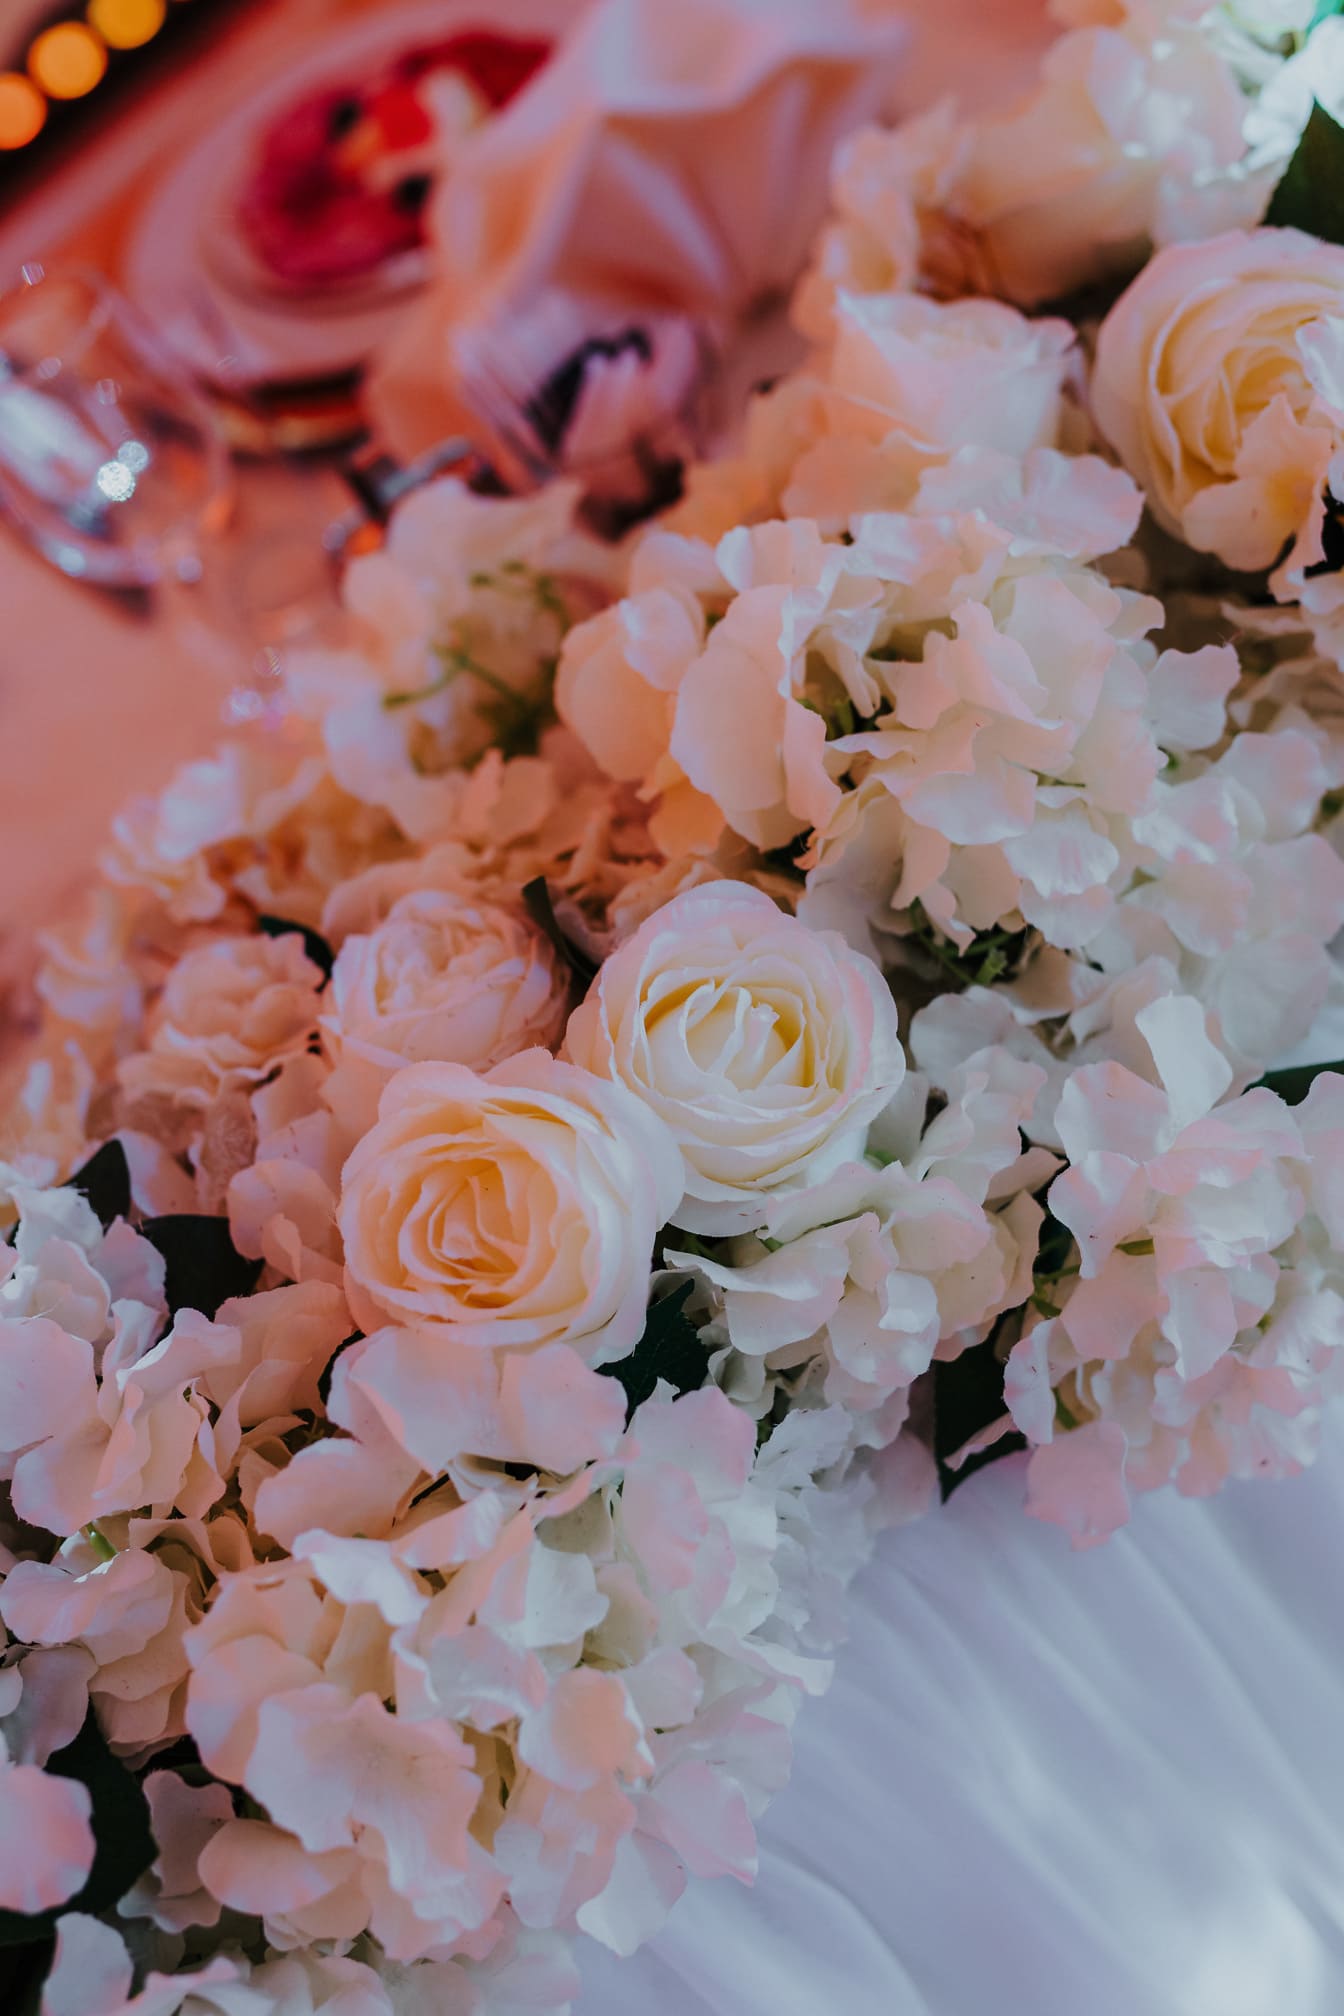 Kuncup mawar putih yang indah pada pengaturan buket pernikahan